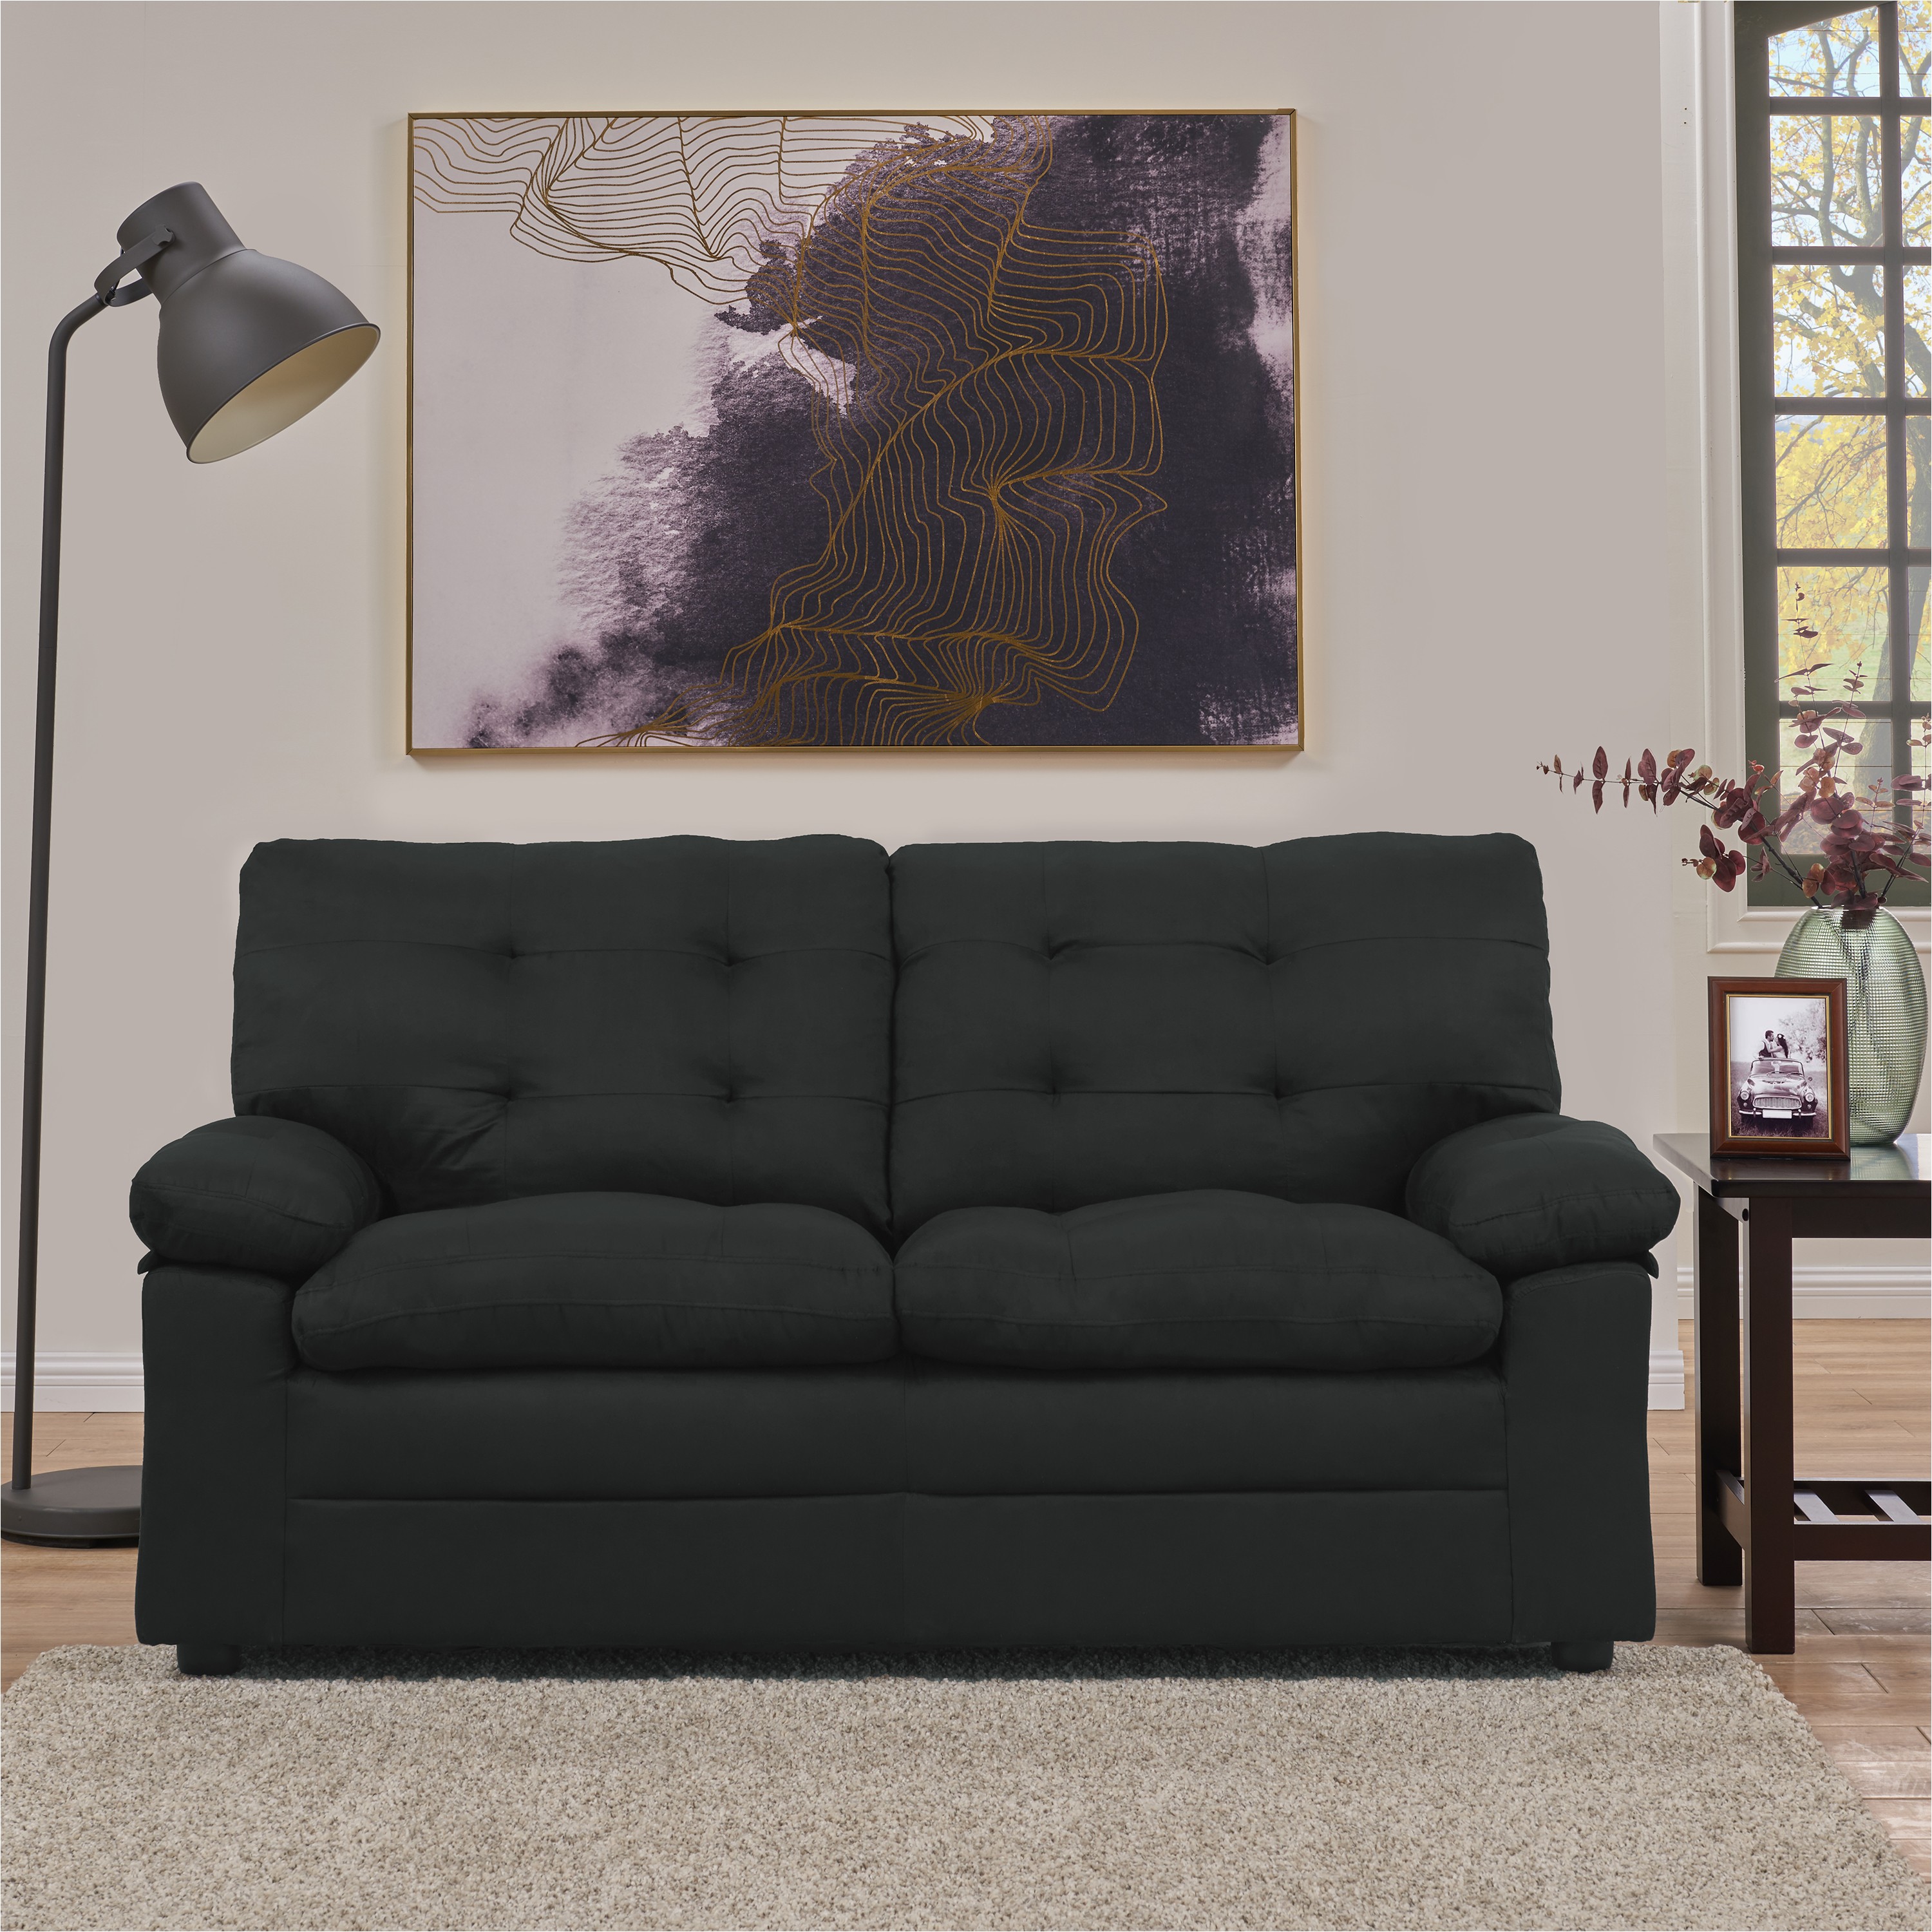 Mainstays Buchannan sofa Black Faux Leather Mainstays Buchannan Upholstered Apartment sofa Black Walmart Com